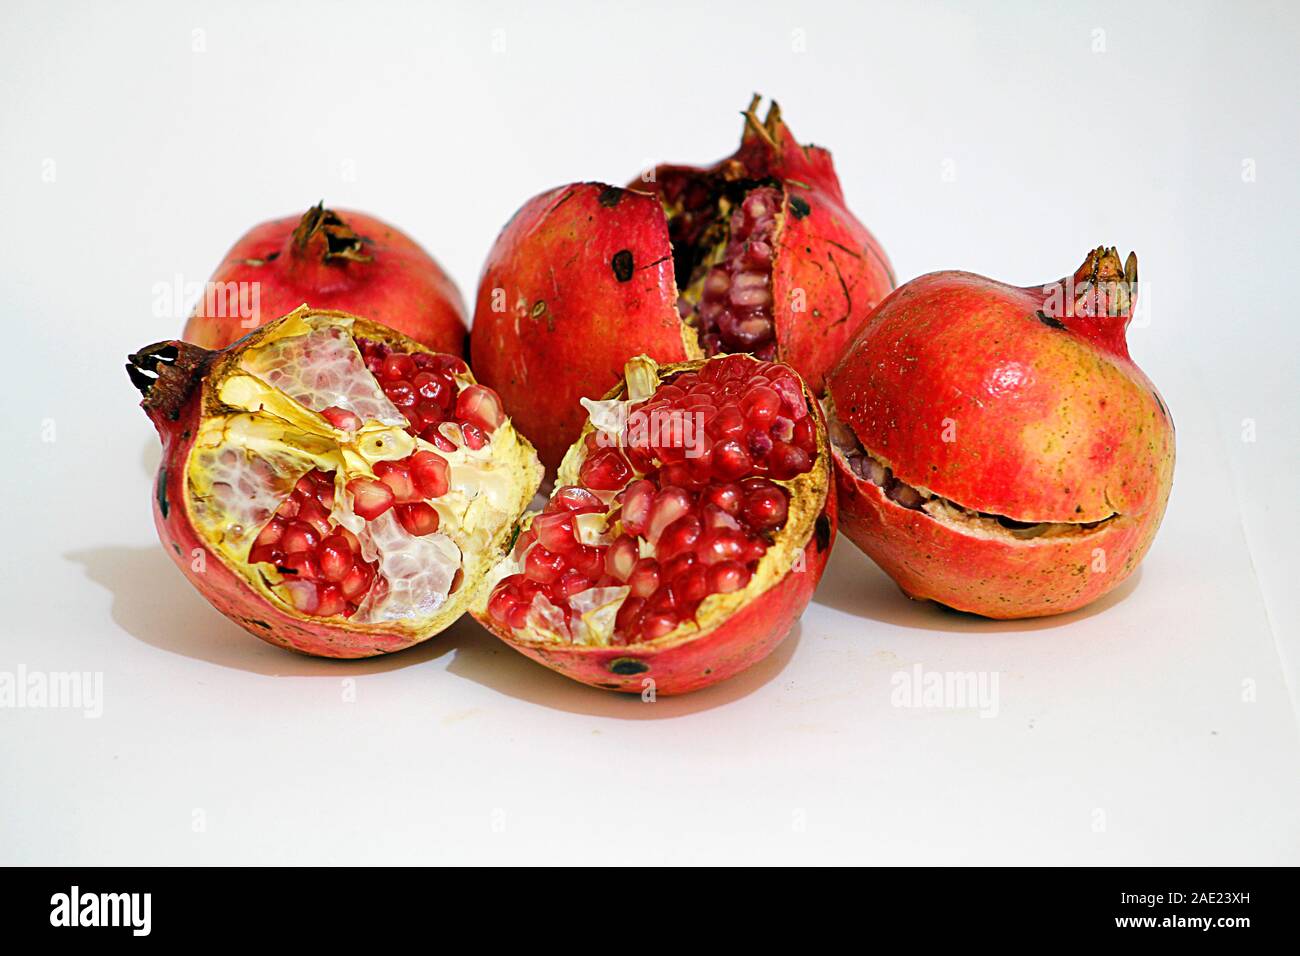 Ripe pomegranate isolated on white background Stock Photo